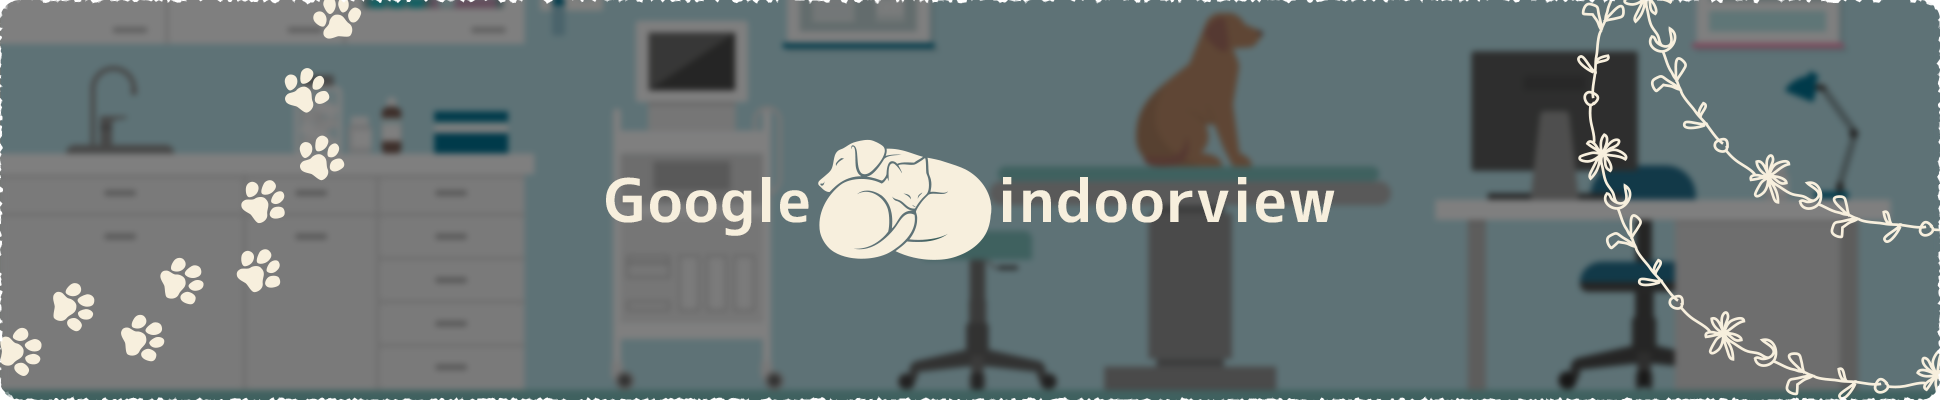 google indoorview